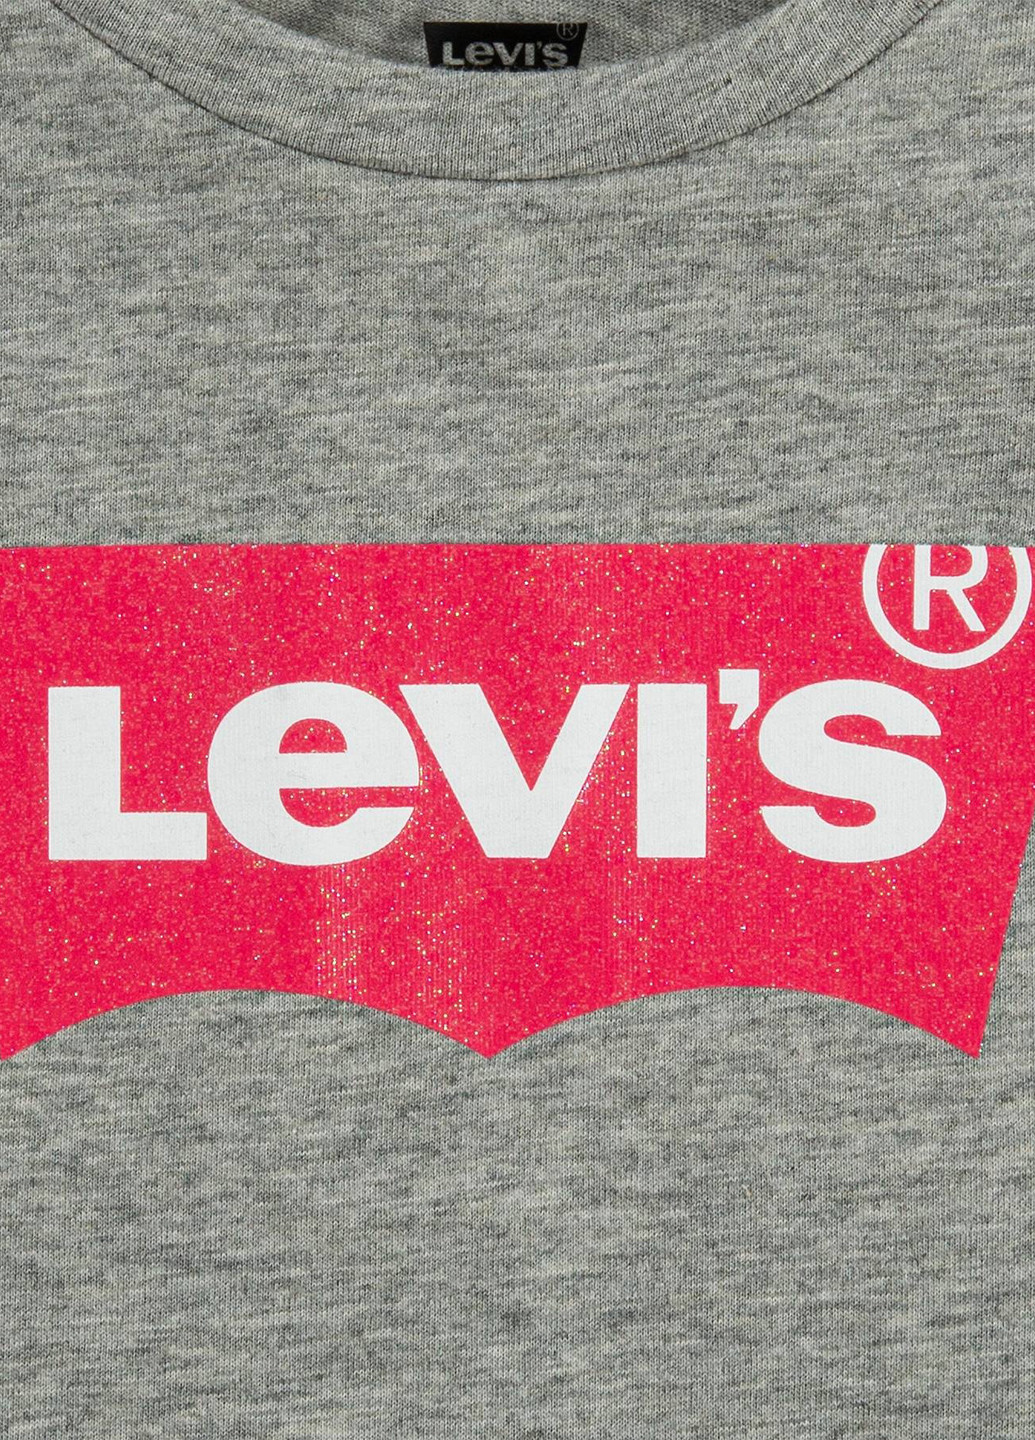 Сіра літня футболка Levi's